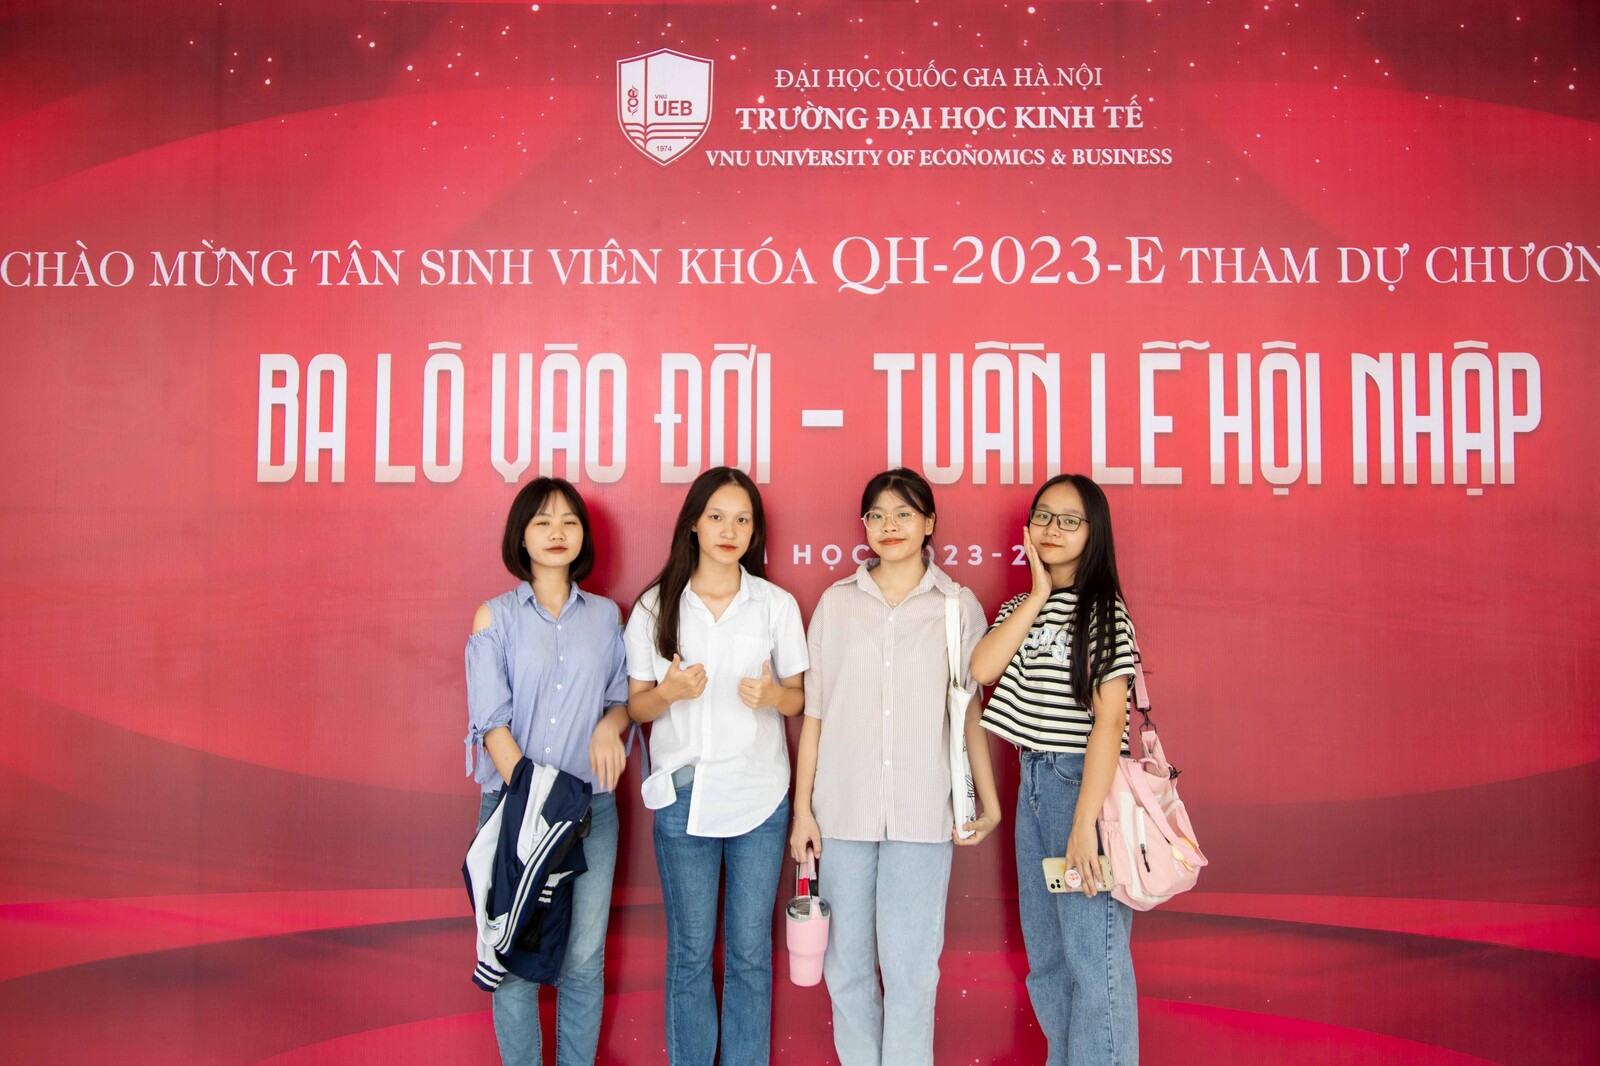 Tân sinh viên 2k5 hân hoan tham gia tuần lễ hội nhập Trường Đại học Kinh tế - ĐHQGHN